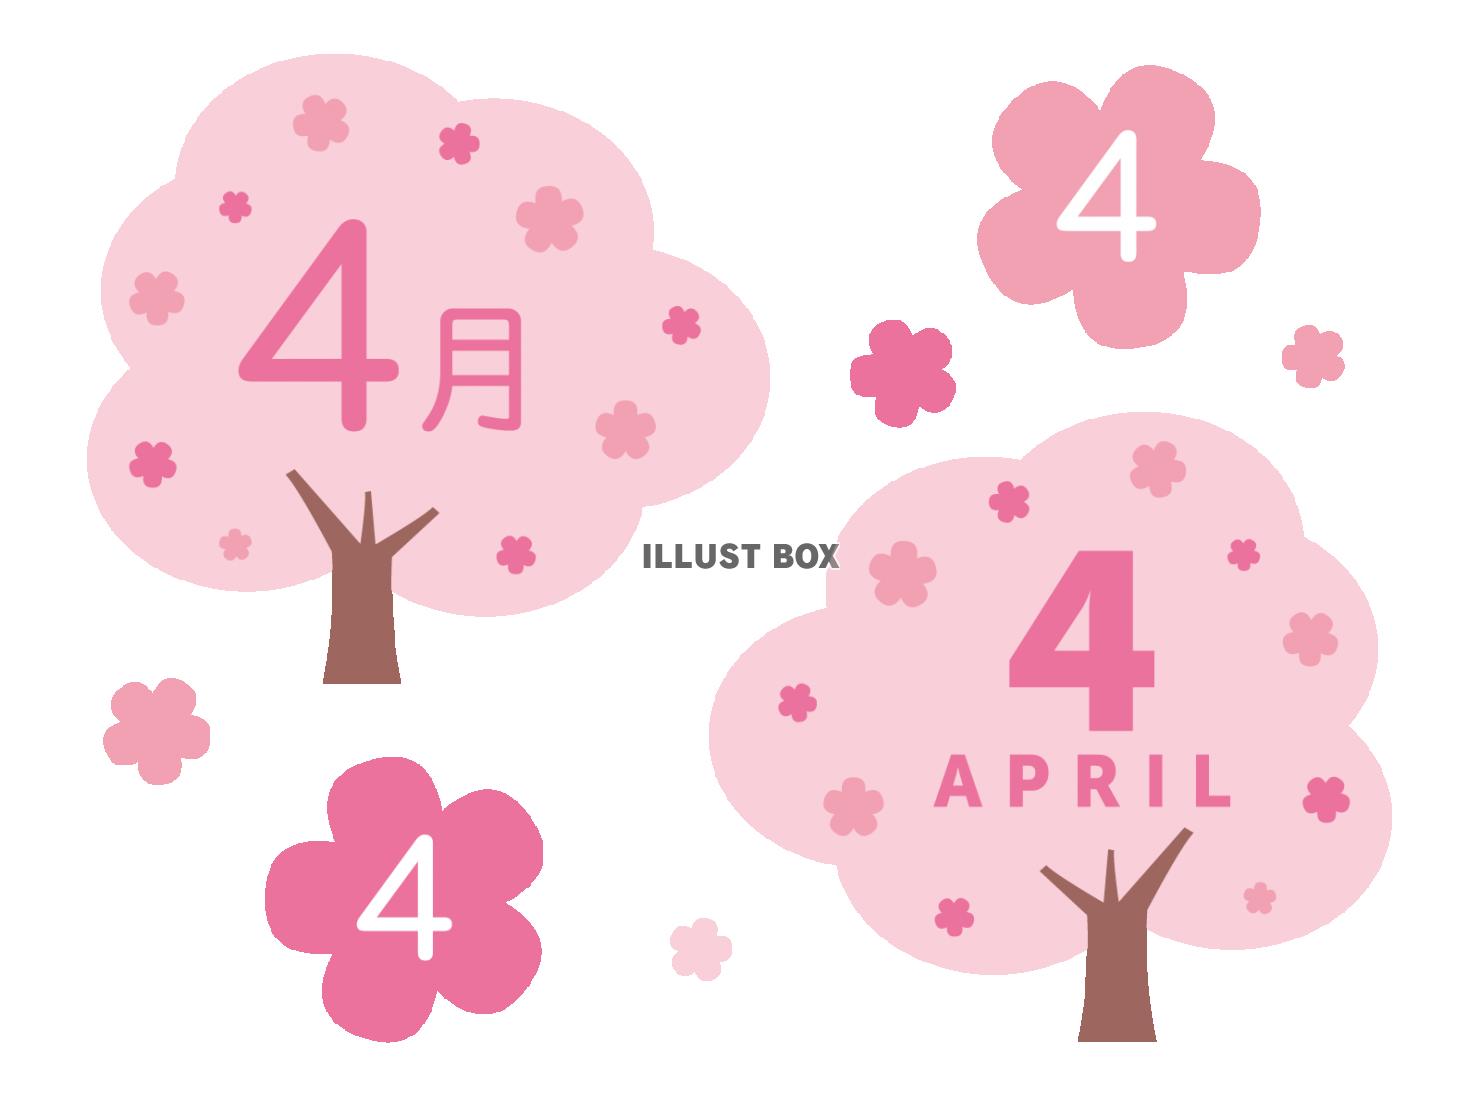 カレンダーの見出しに使えるかわいい桜の素材セット_4月